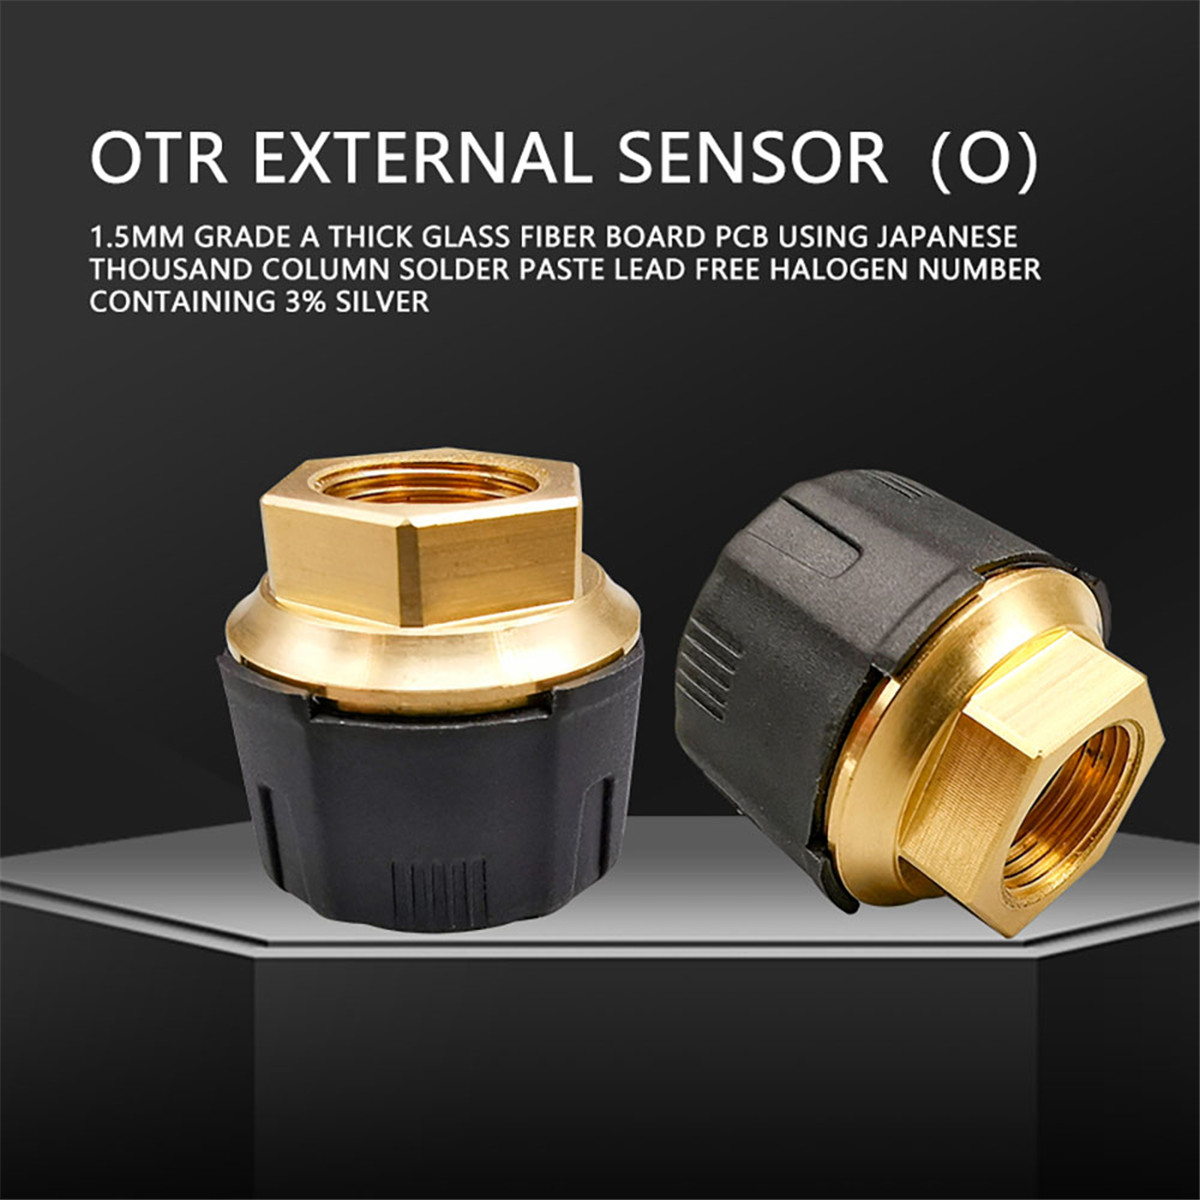 OTR EXTERNAL Sensor01 (9)